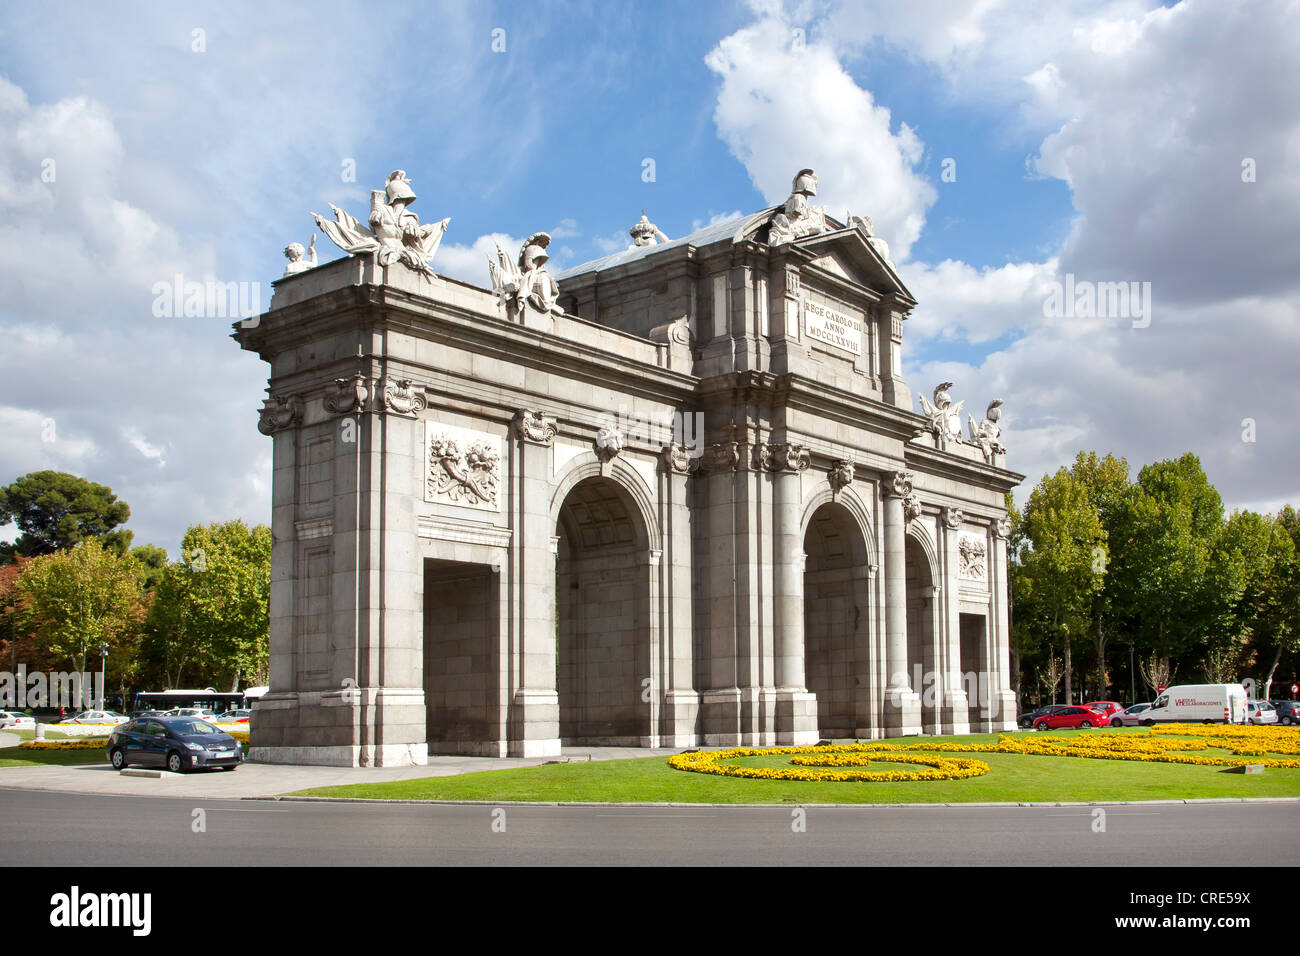 Puerta de Alcala arch sur la Plaza de la Independencia square, Madrid, Spain, Europe Banque D'Images